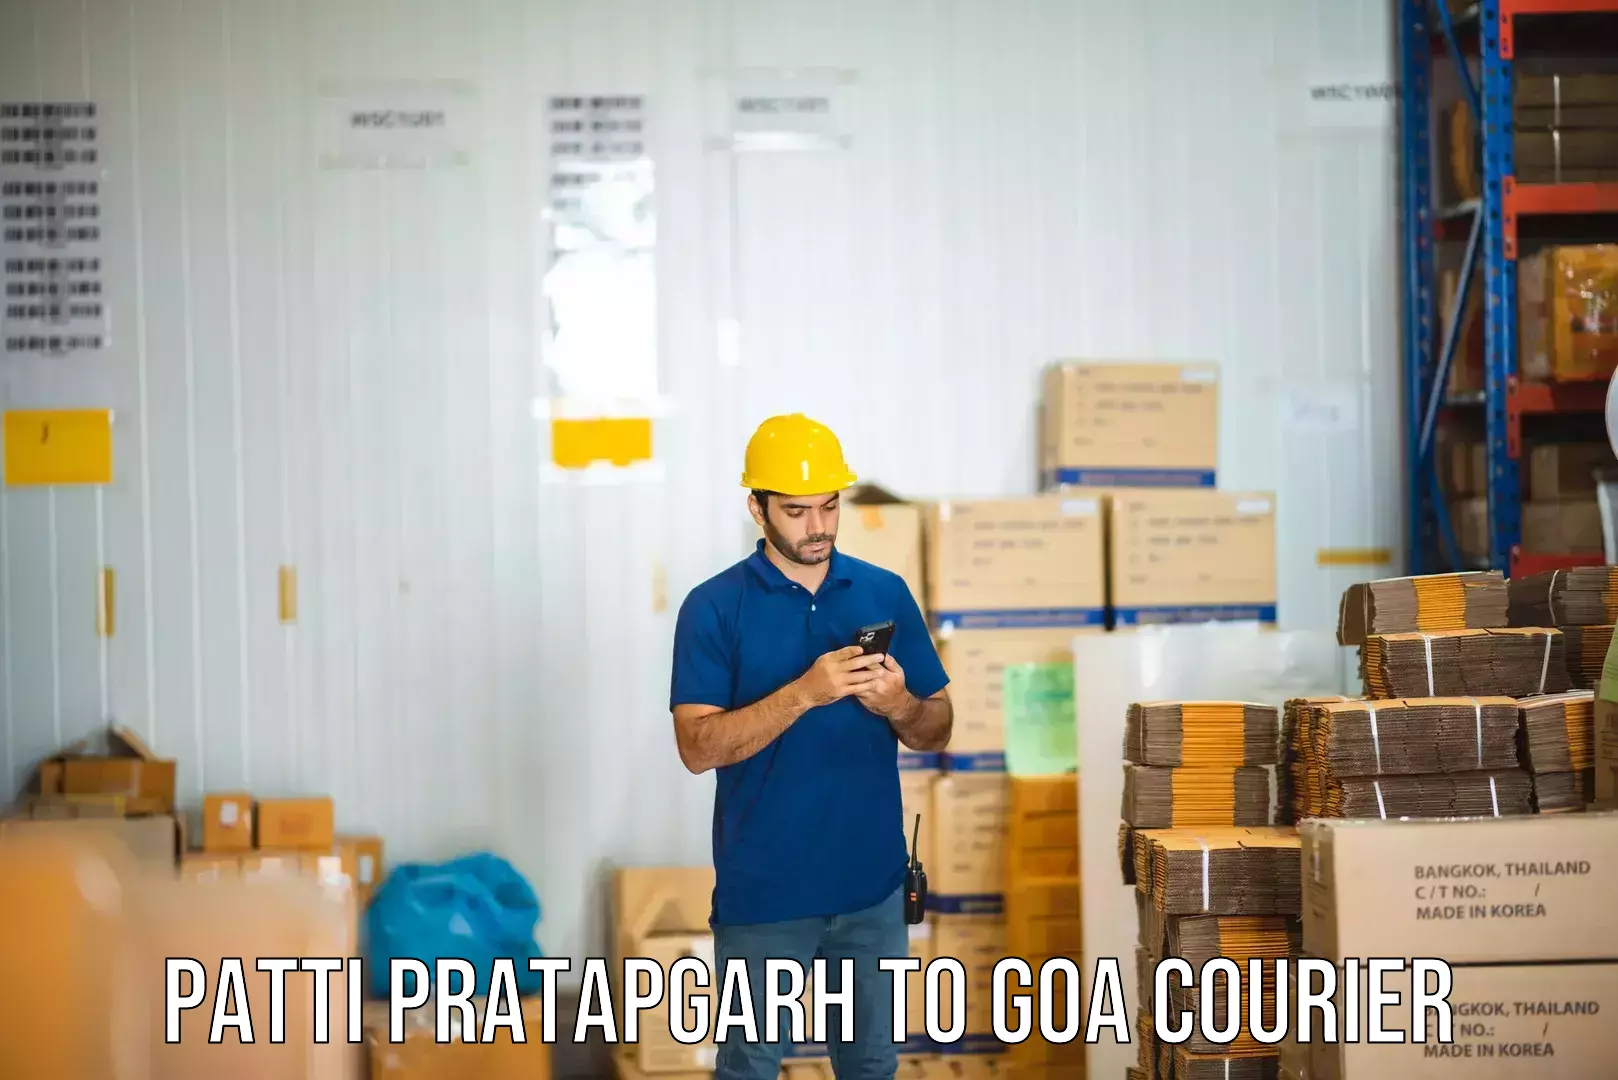 Flexible parcel services Patti Pratapgarh to South Goa